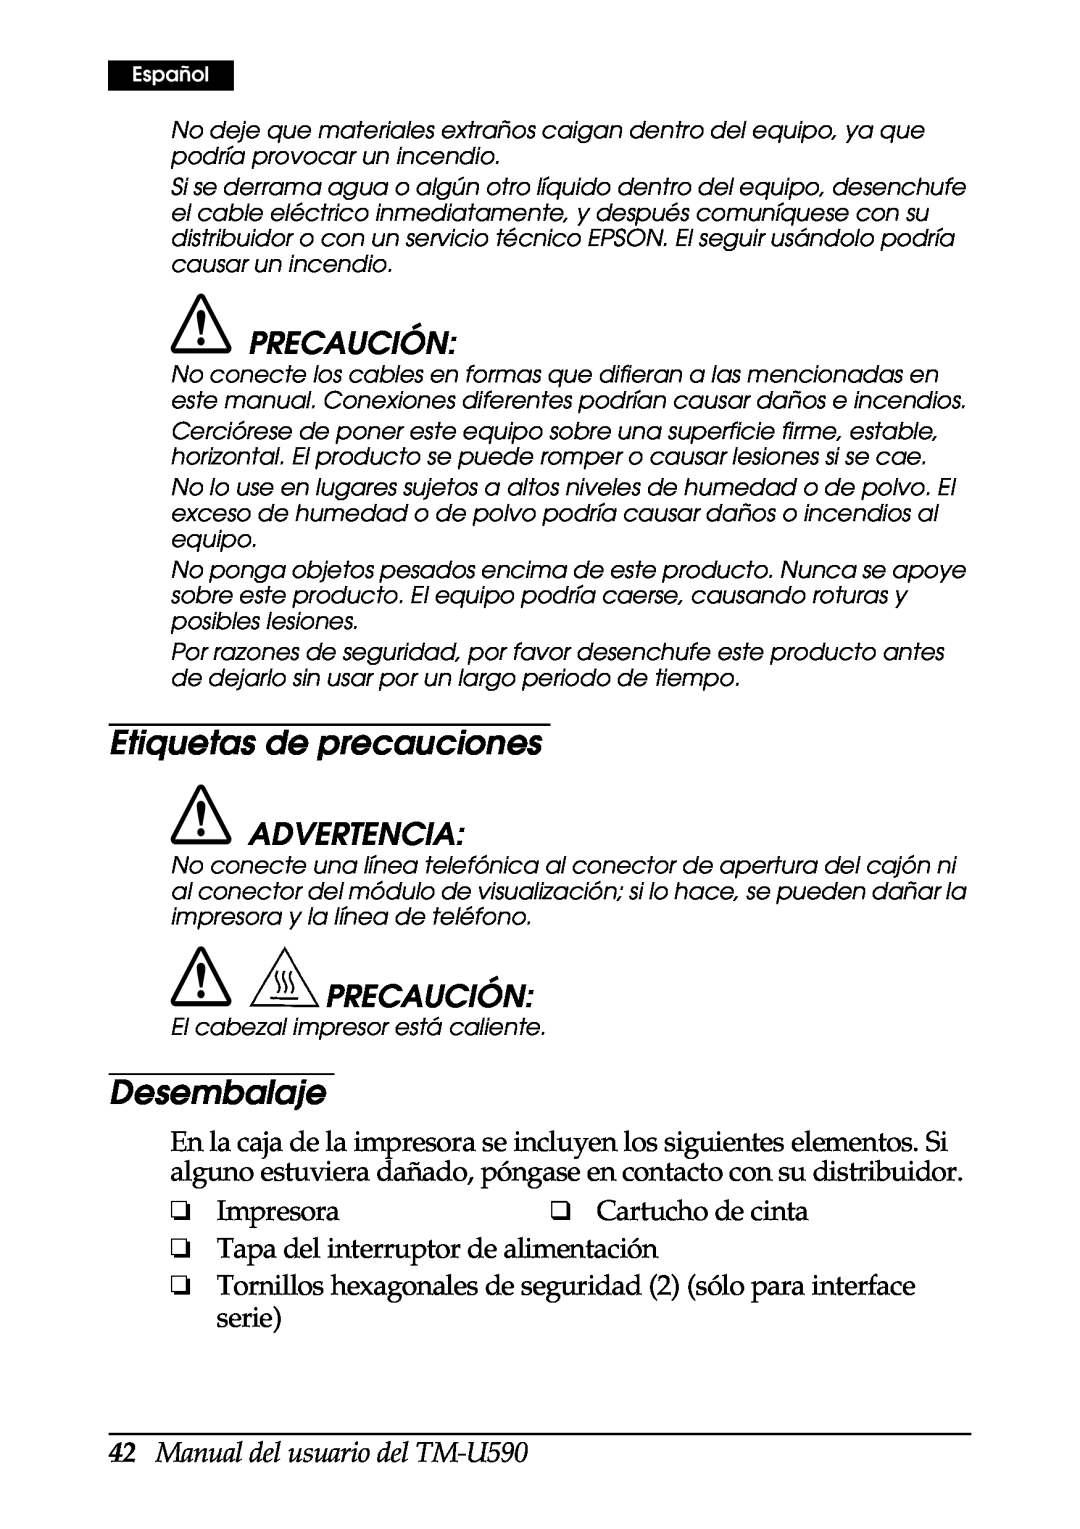 FARGO electronic Etiquetas de precauciones, Desembalaje, Precaución, Manual del usuario del TM-U590, Advertencia 